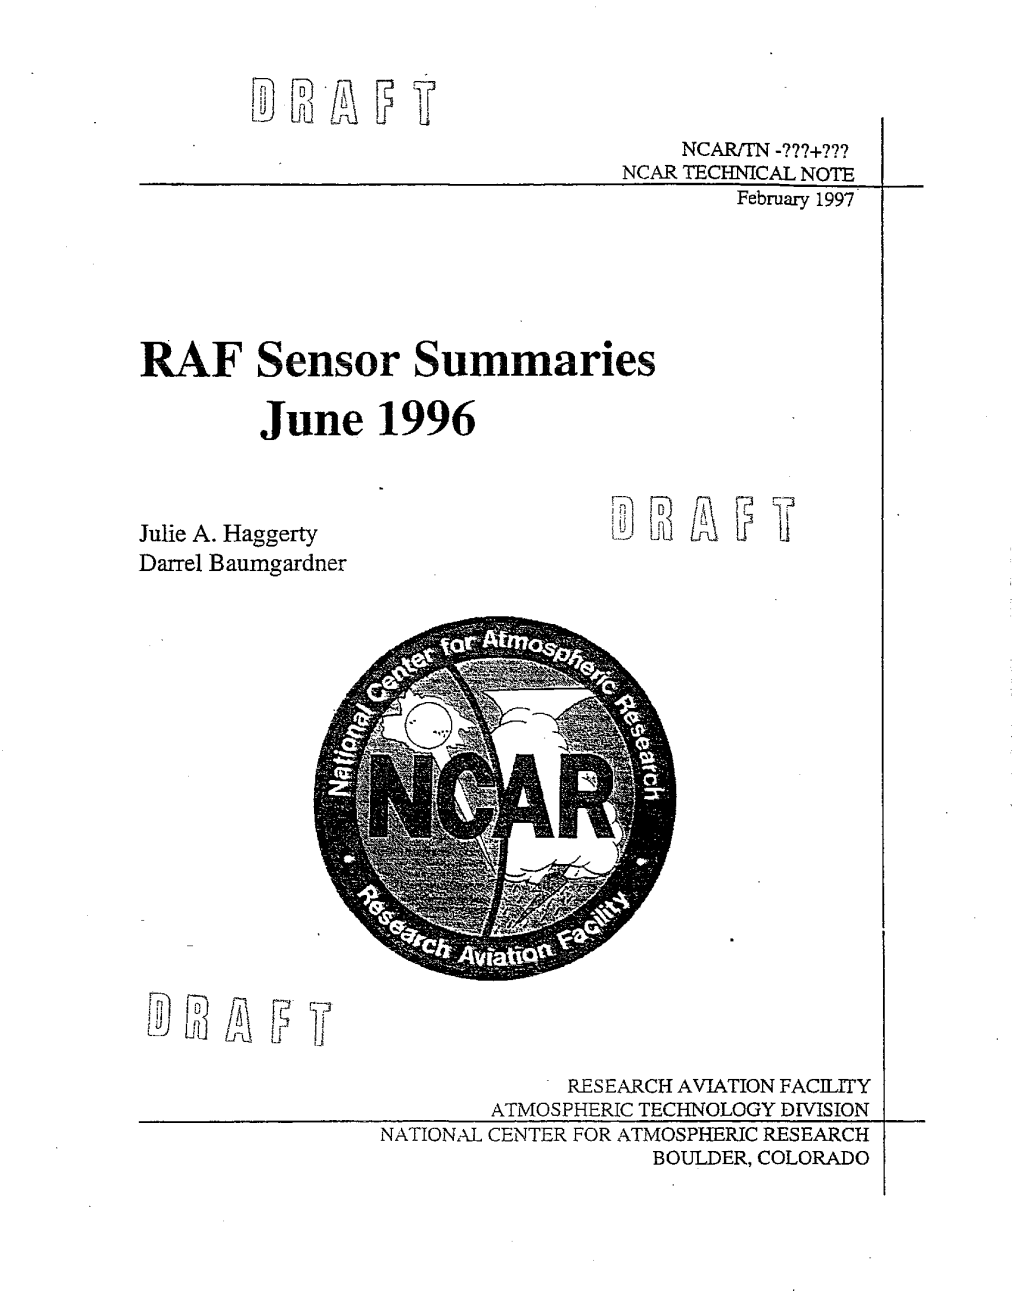 RAF Sensor Summaries June 1996